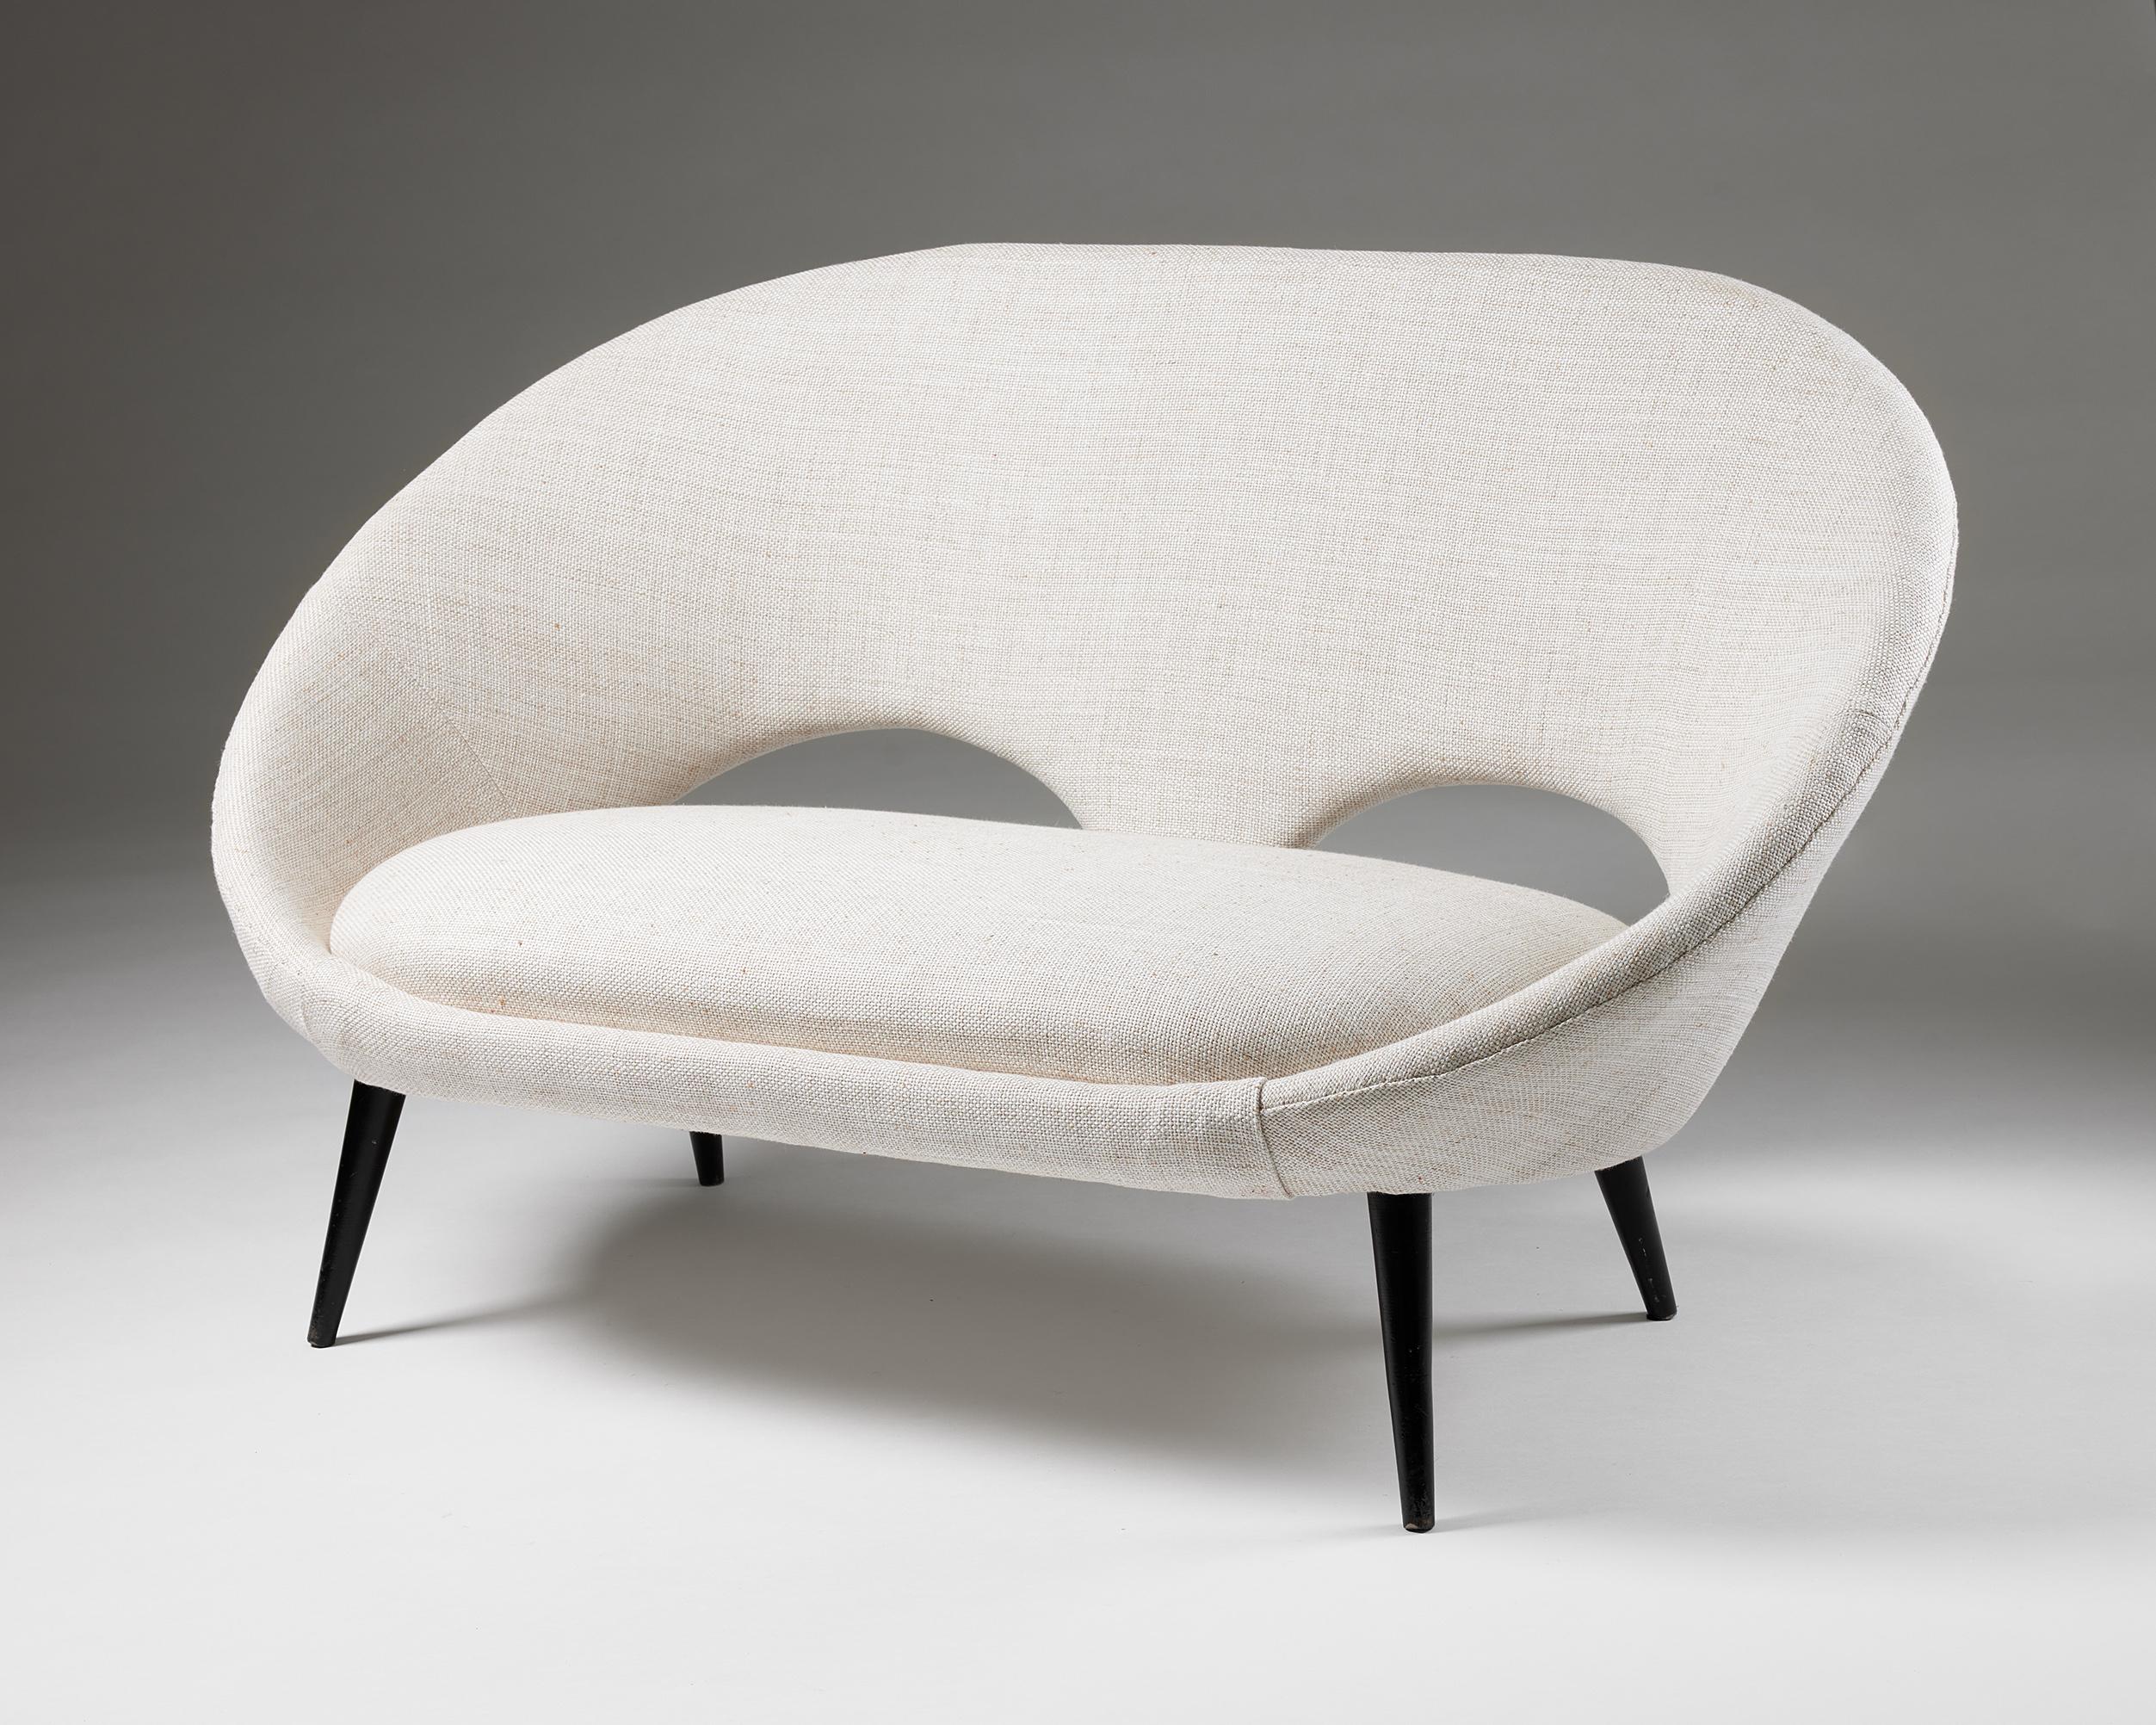 Sofa, anonymous,
Sweden, 1950s.

Textile.

H: 78 cm / 2' 6 3/4''
W: 134 cm / 4' 4 3/4''
D: 79 cm / 2' 7''
SH: 40 cm / 15 3/4''